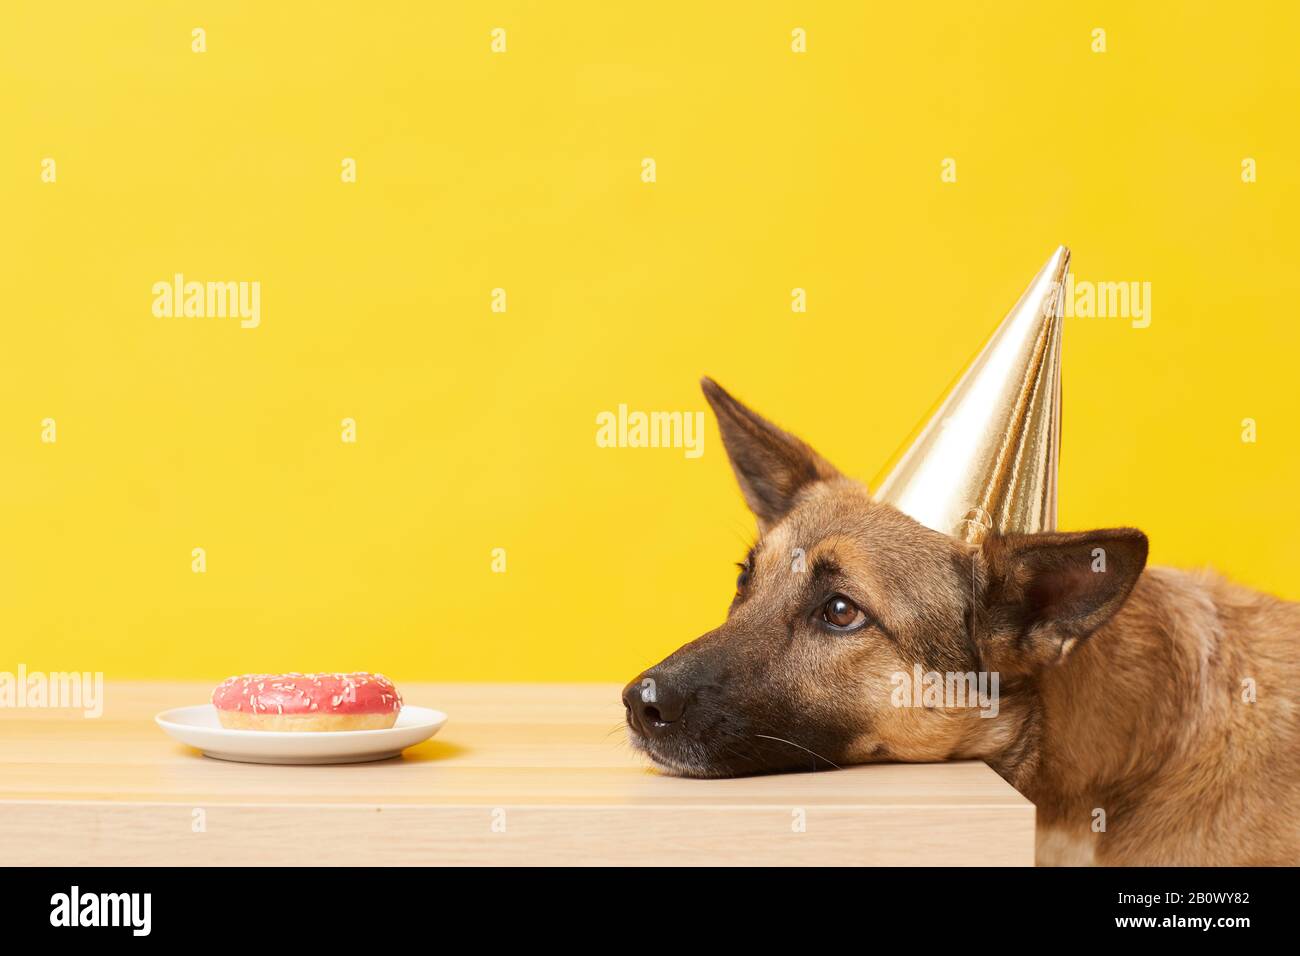 Pastore tedesco in cappello in attesa dell'ordine di mangiare la torta sul tavolo sullo sfondo giallo Foto Stock